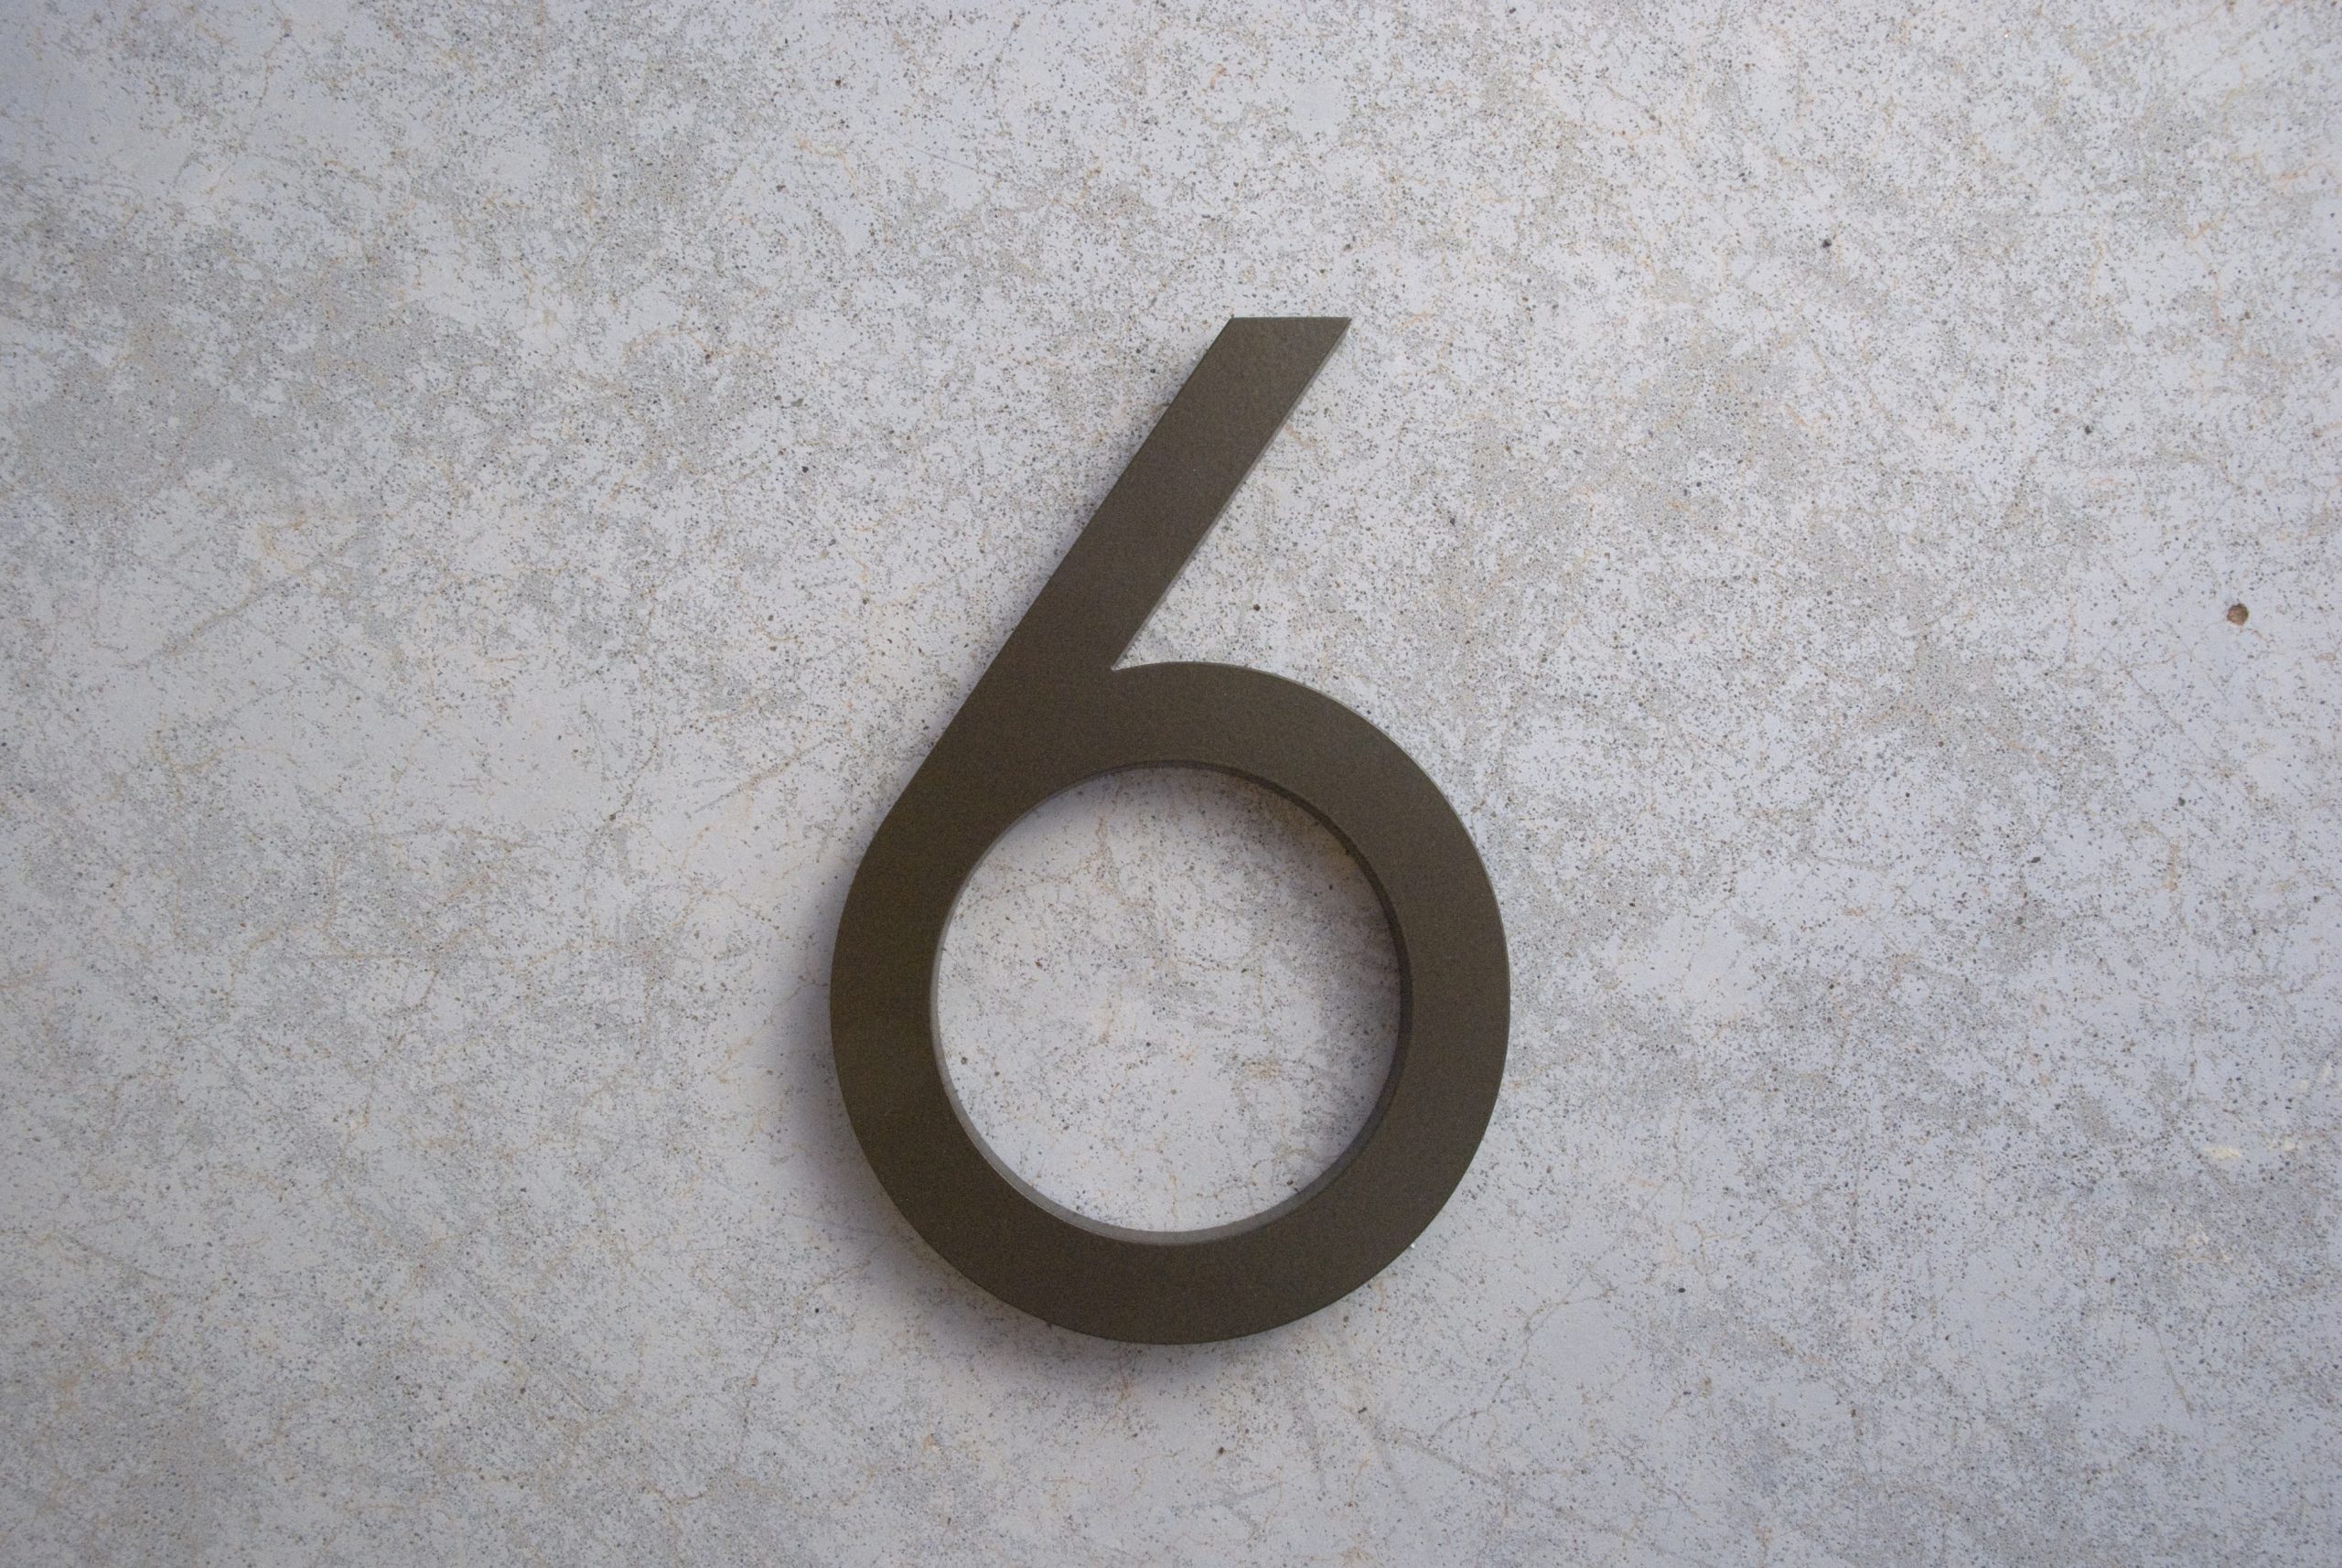 Διαβάστε τις δέκα μυστικιστικές ιδιότητες του αριθμού έξι